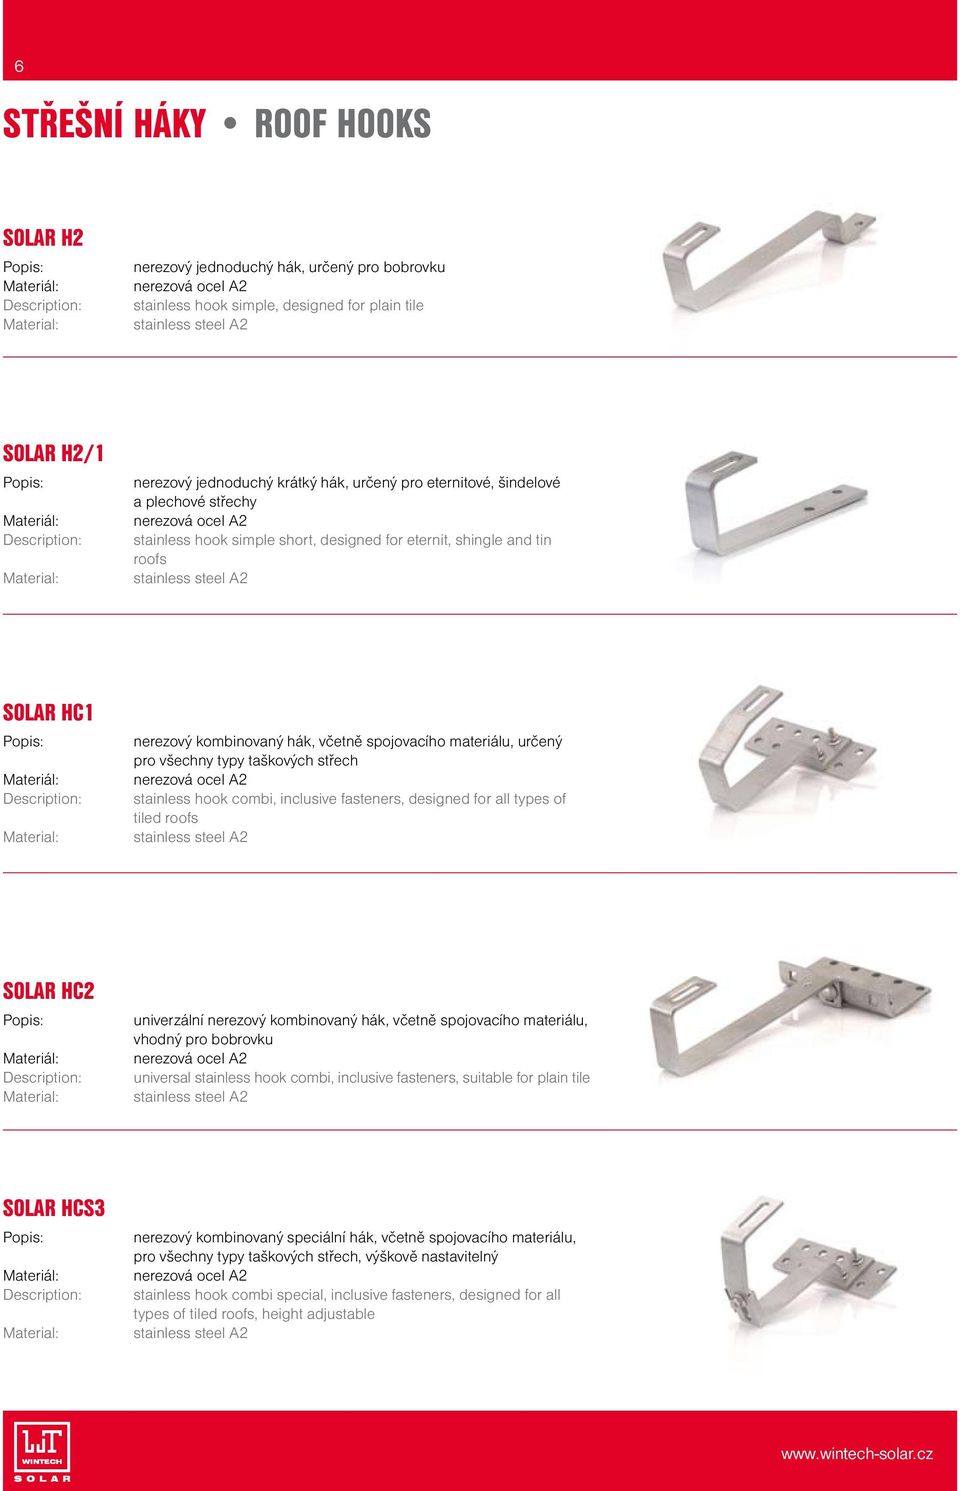 stainless steel A2 SOLAR HC1 Materiál: Material: nerezový kombinovaný hák, včetně spojovacího materiálu, určený pro všechny typy taškových střech nerezová ocel A2 stainless hook combi, inclusive